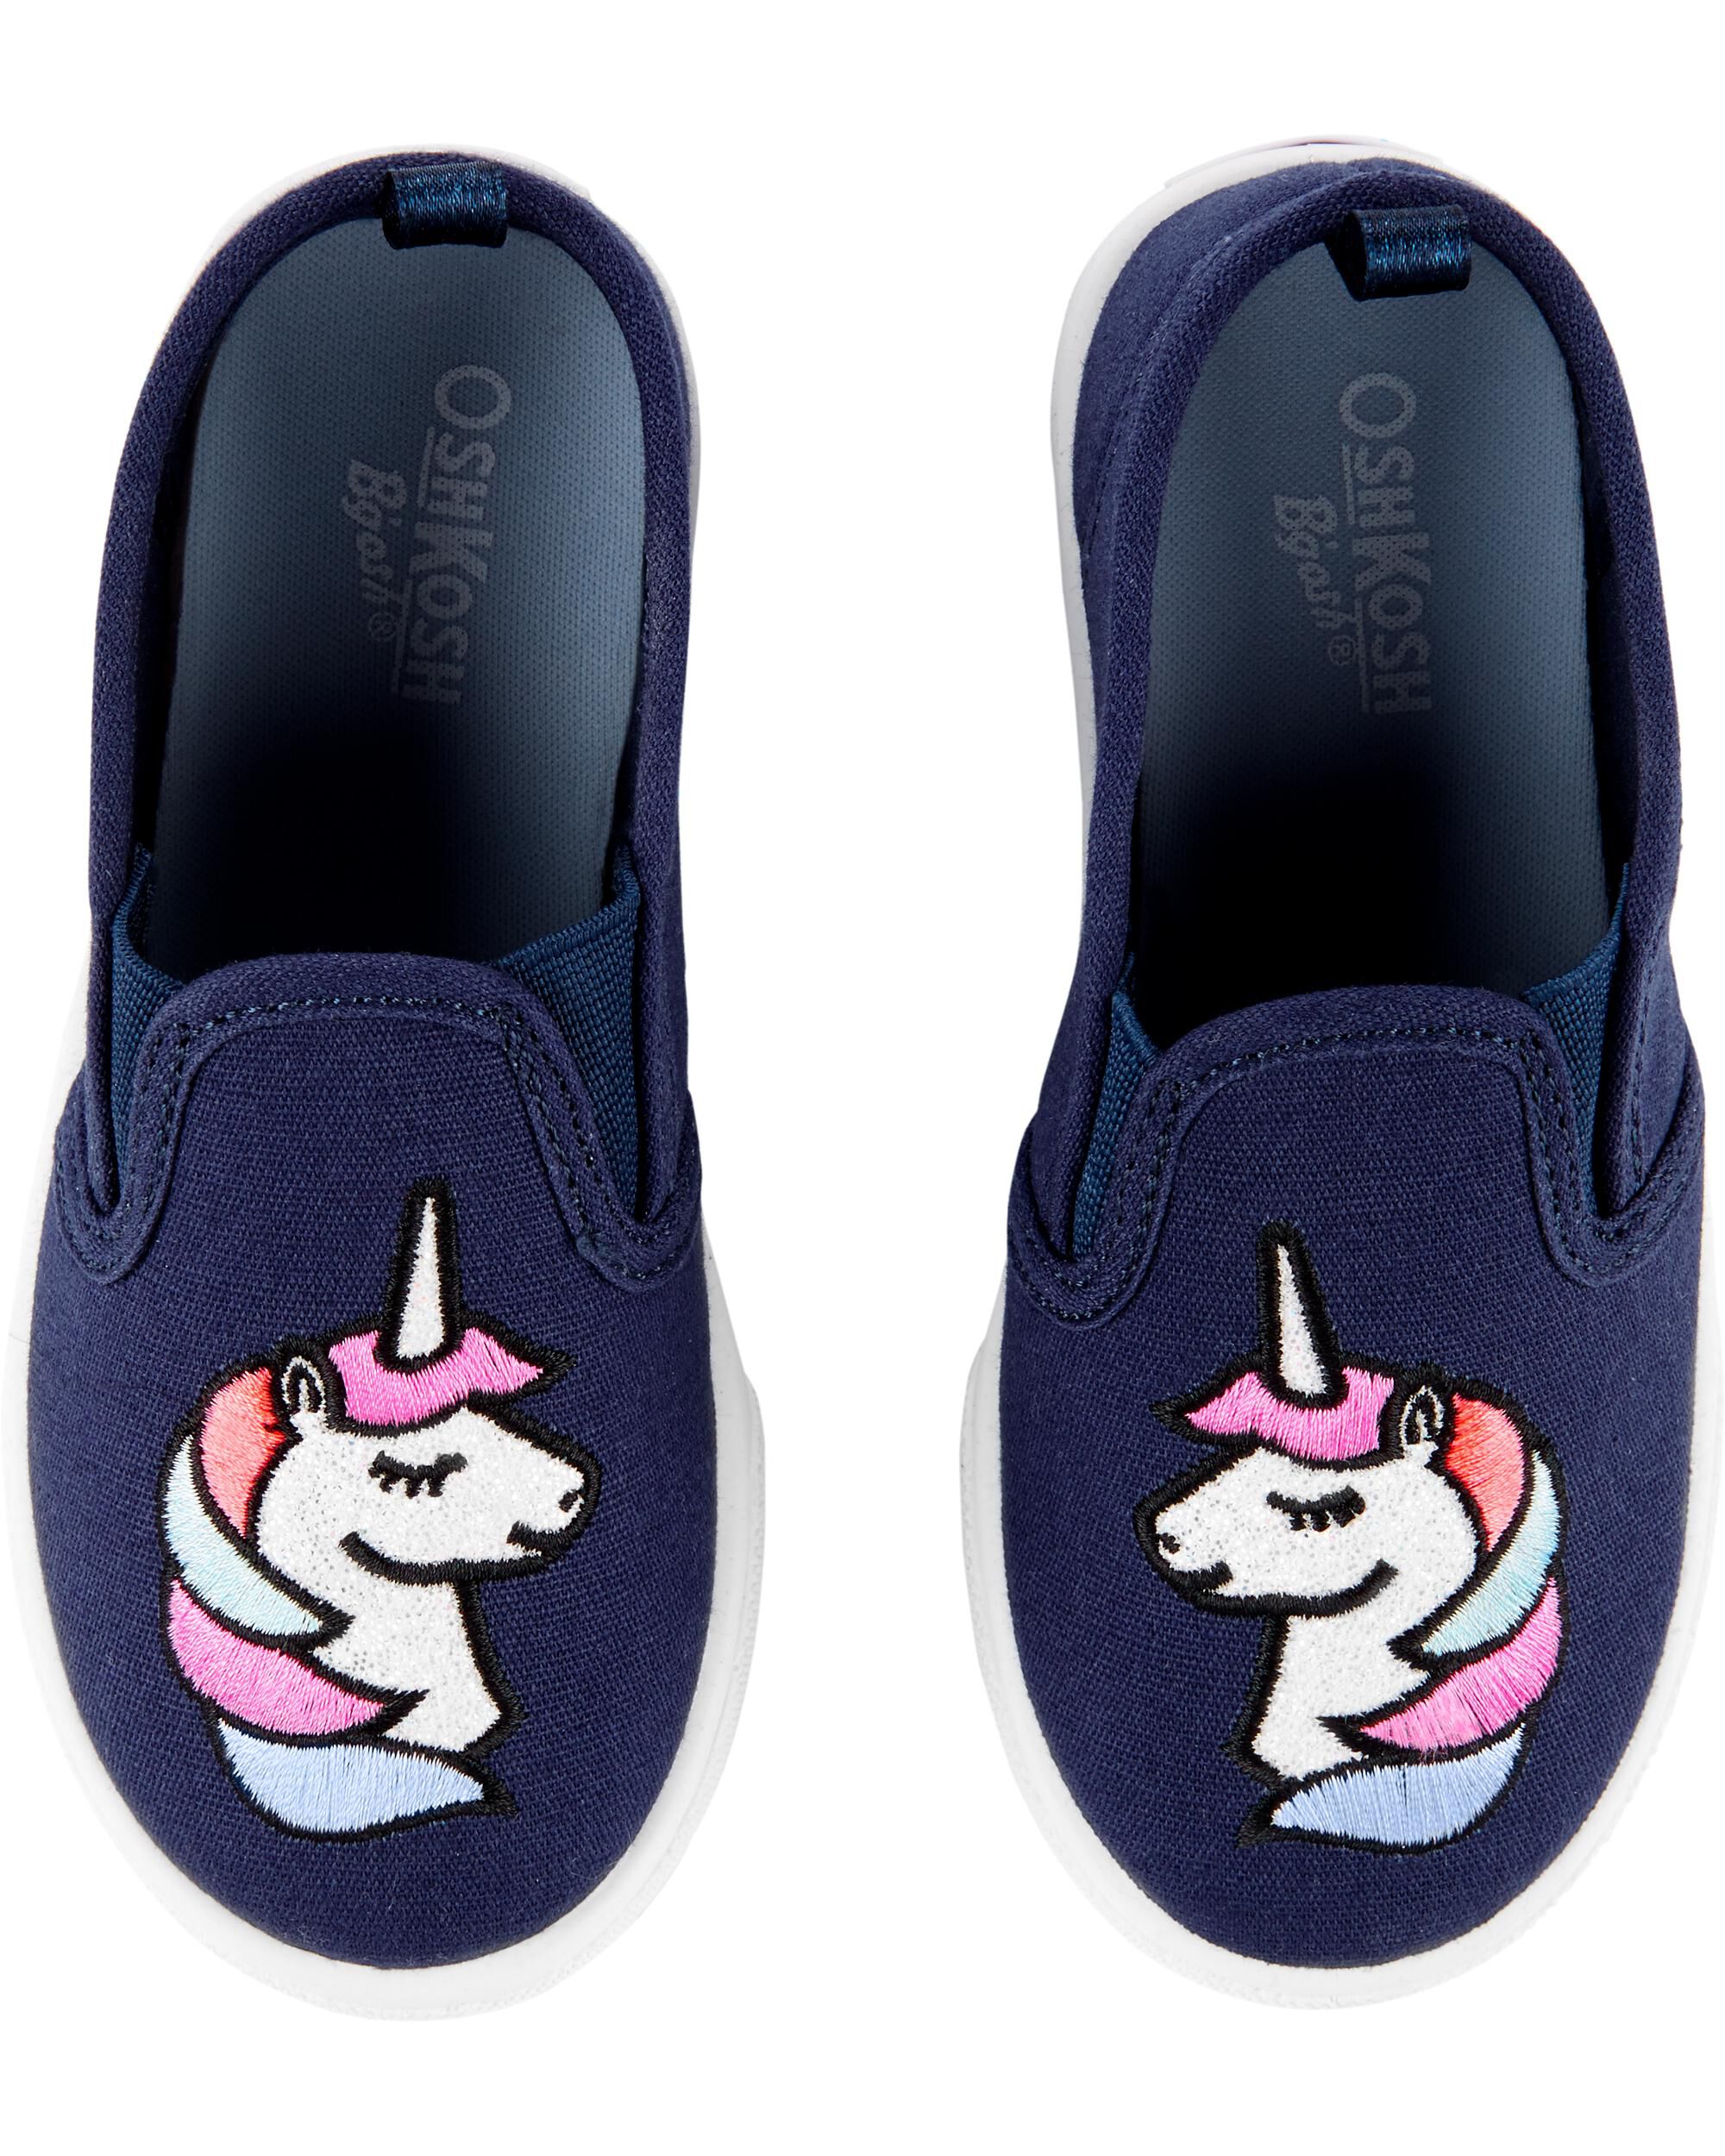 OshKosh Unicorn Slip-On Shoes | oshkosh.com